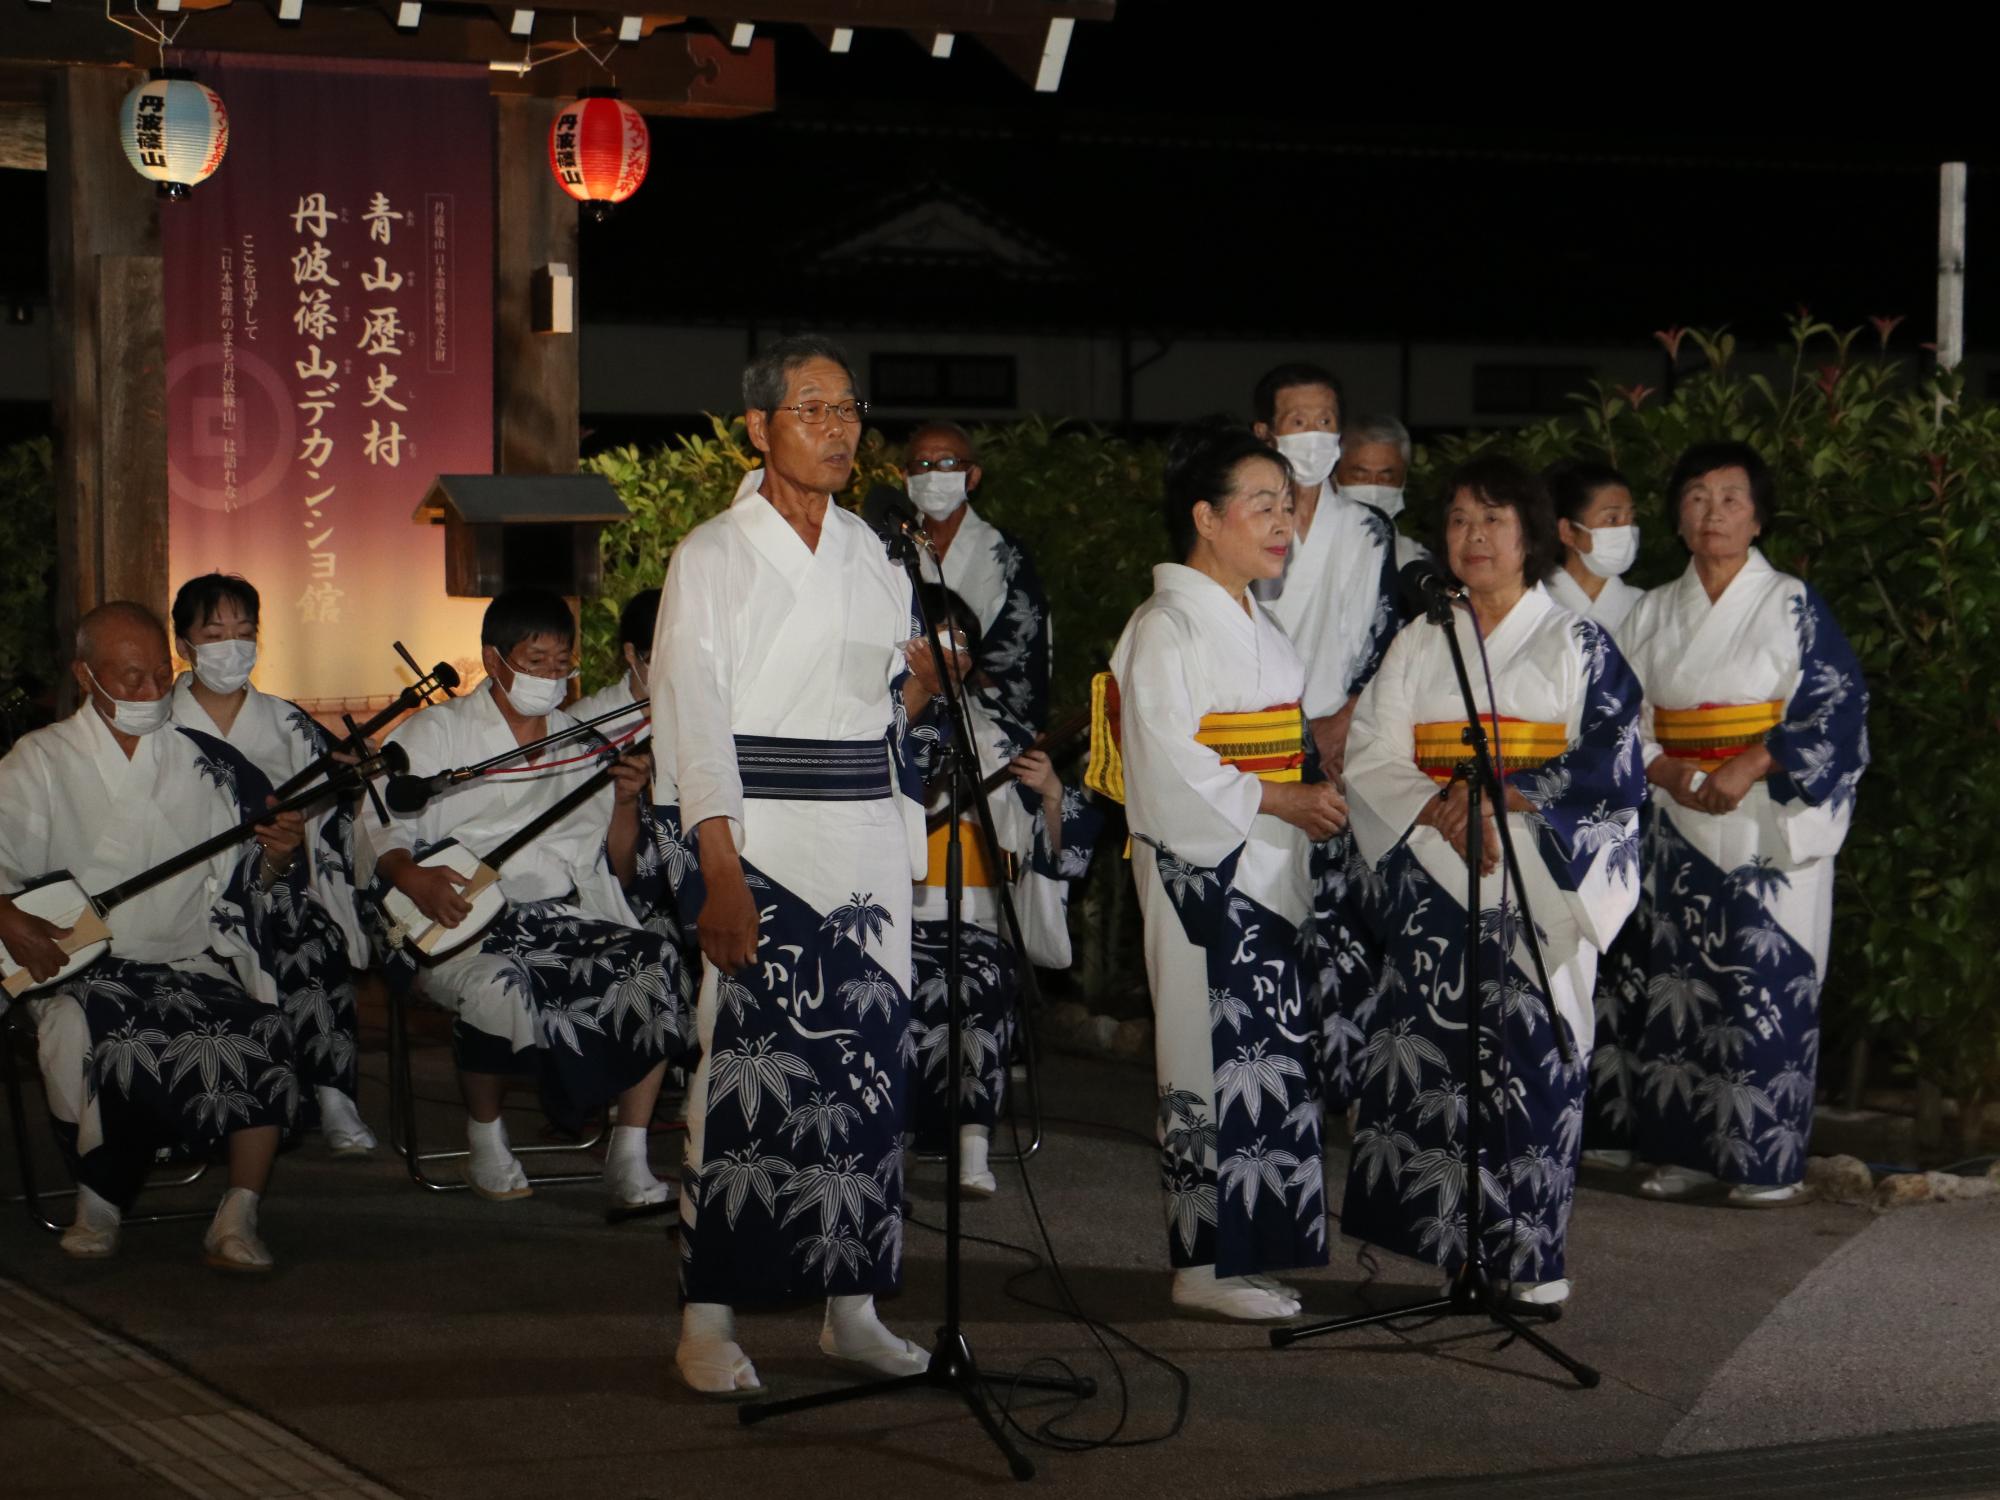 夜に青山歴史村前でデカンショ節保存会の方がデカンショ節を演奏し、うたっている。